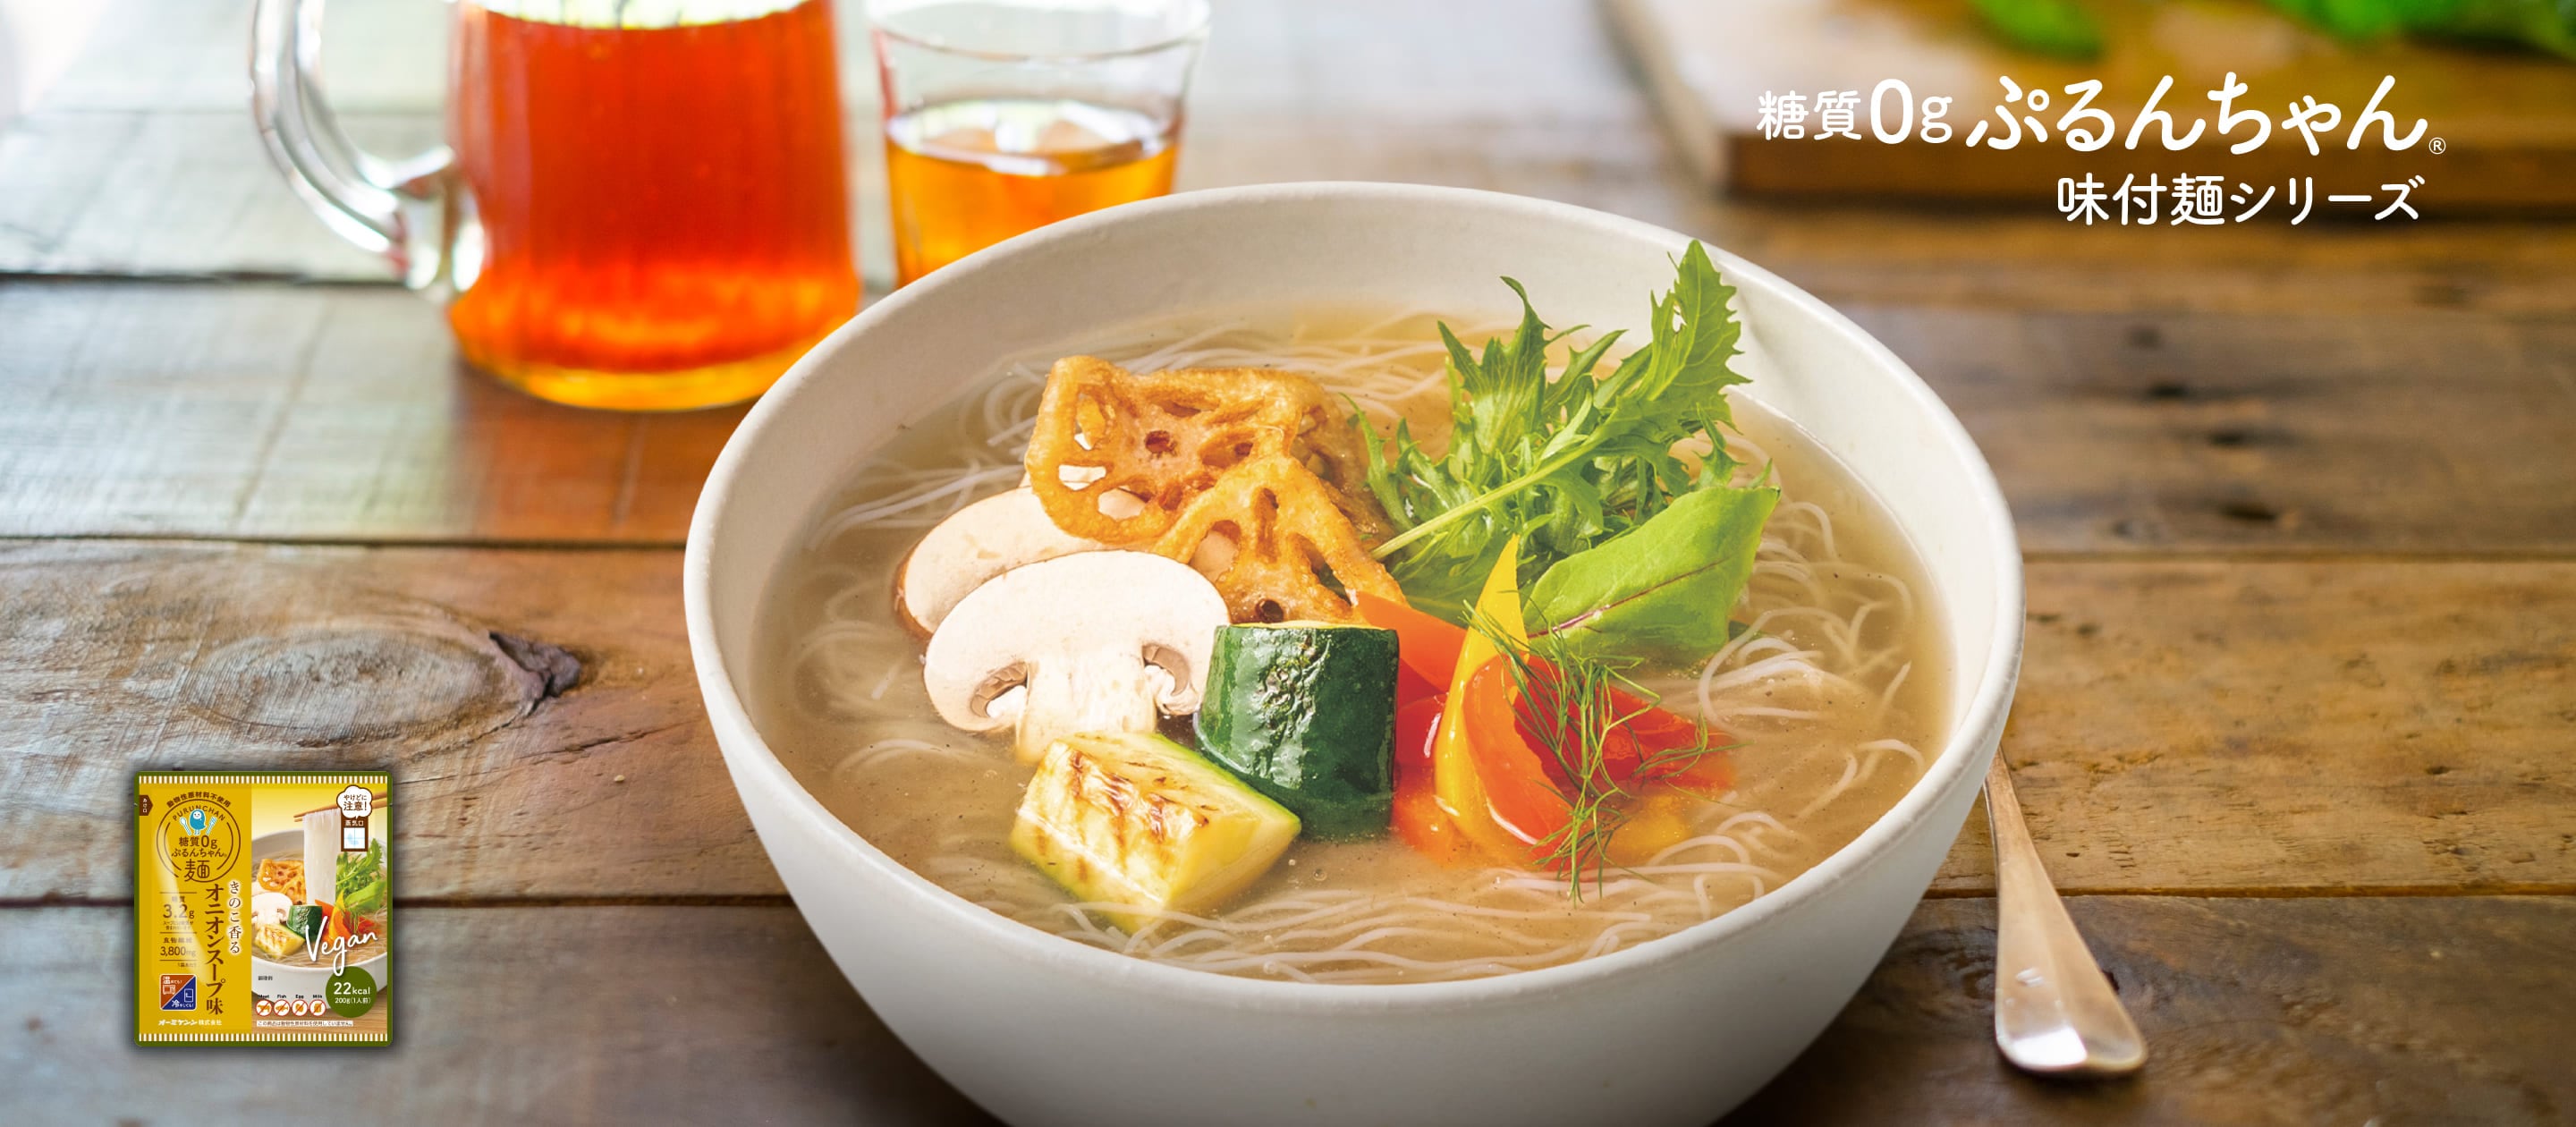 purunchan noodle with soup